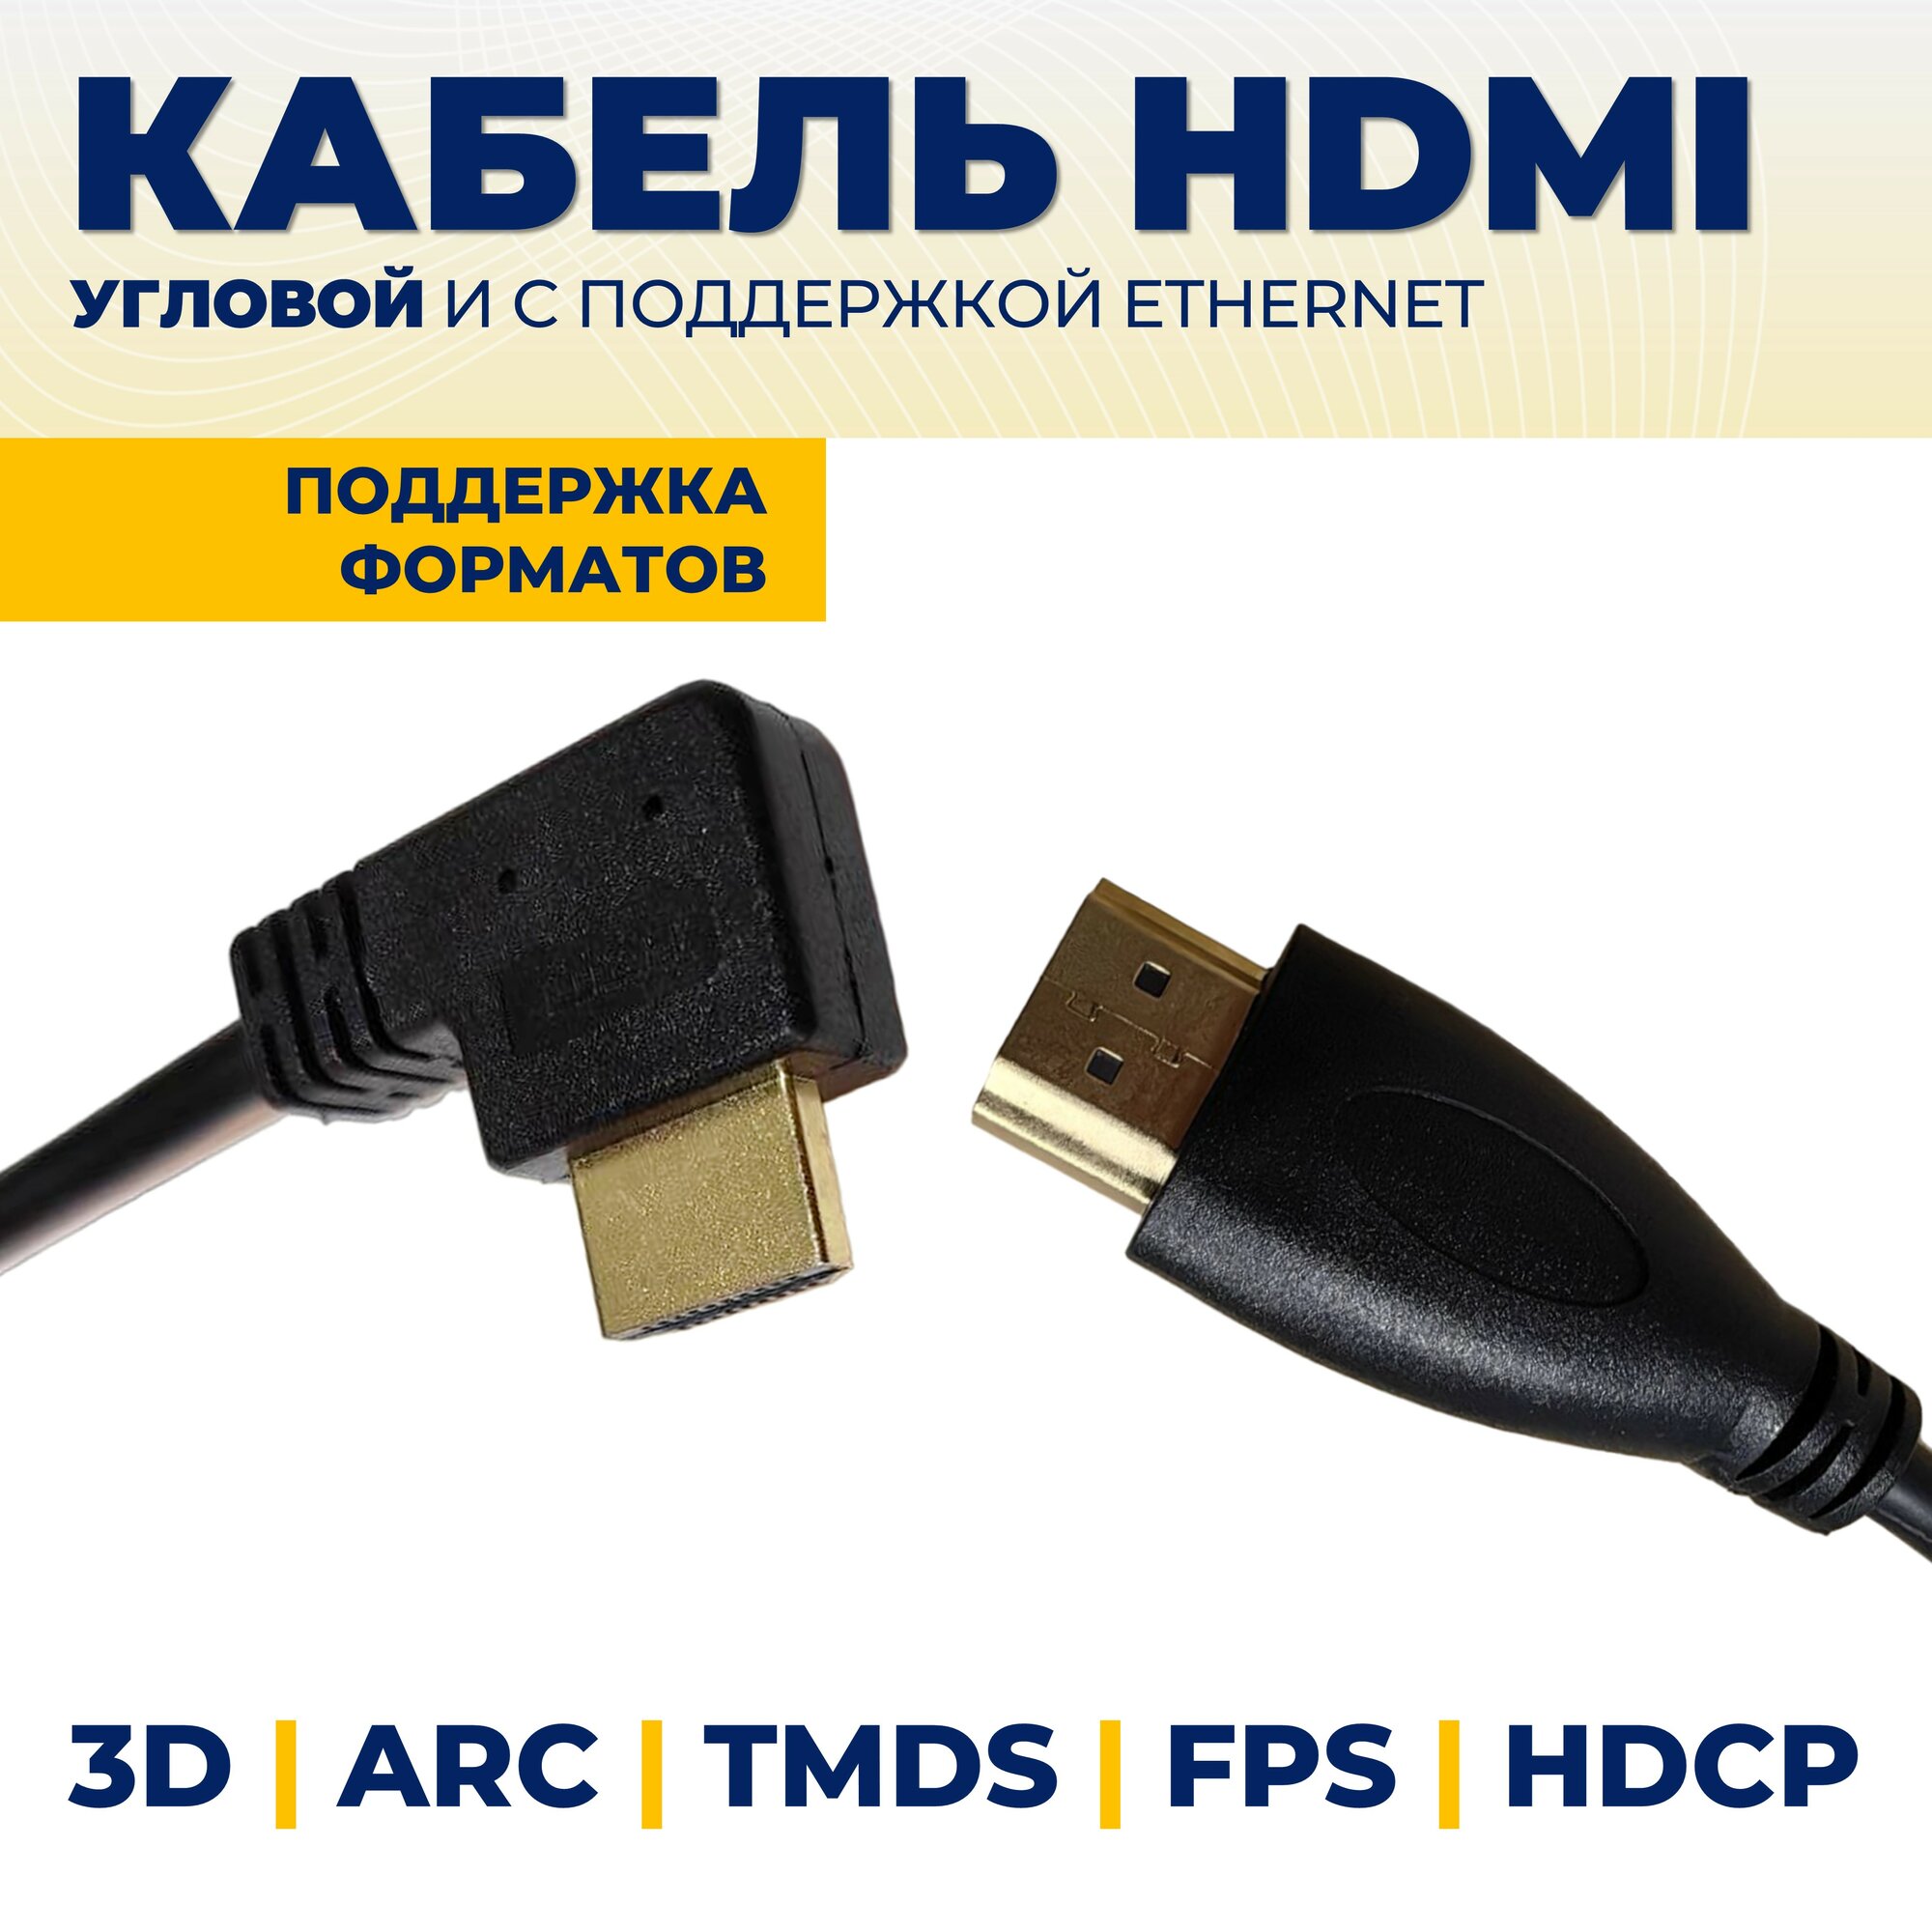 Кабель HDMI, прямой/угловой, 1.5м с поддержкой ethernet